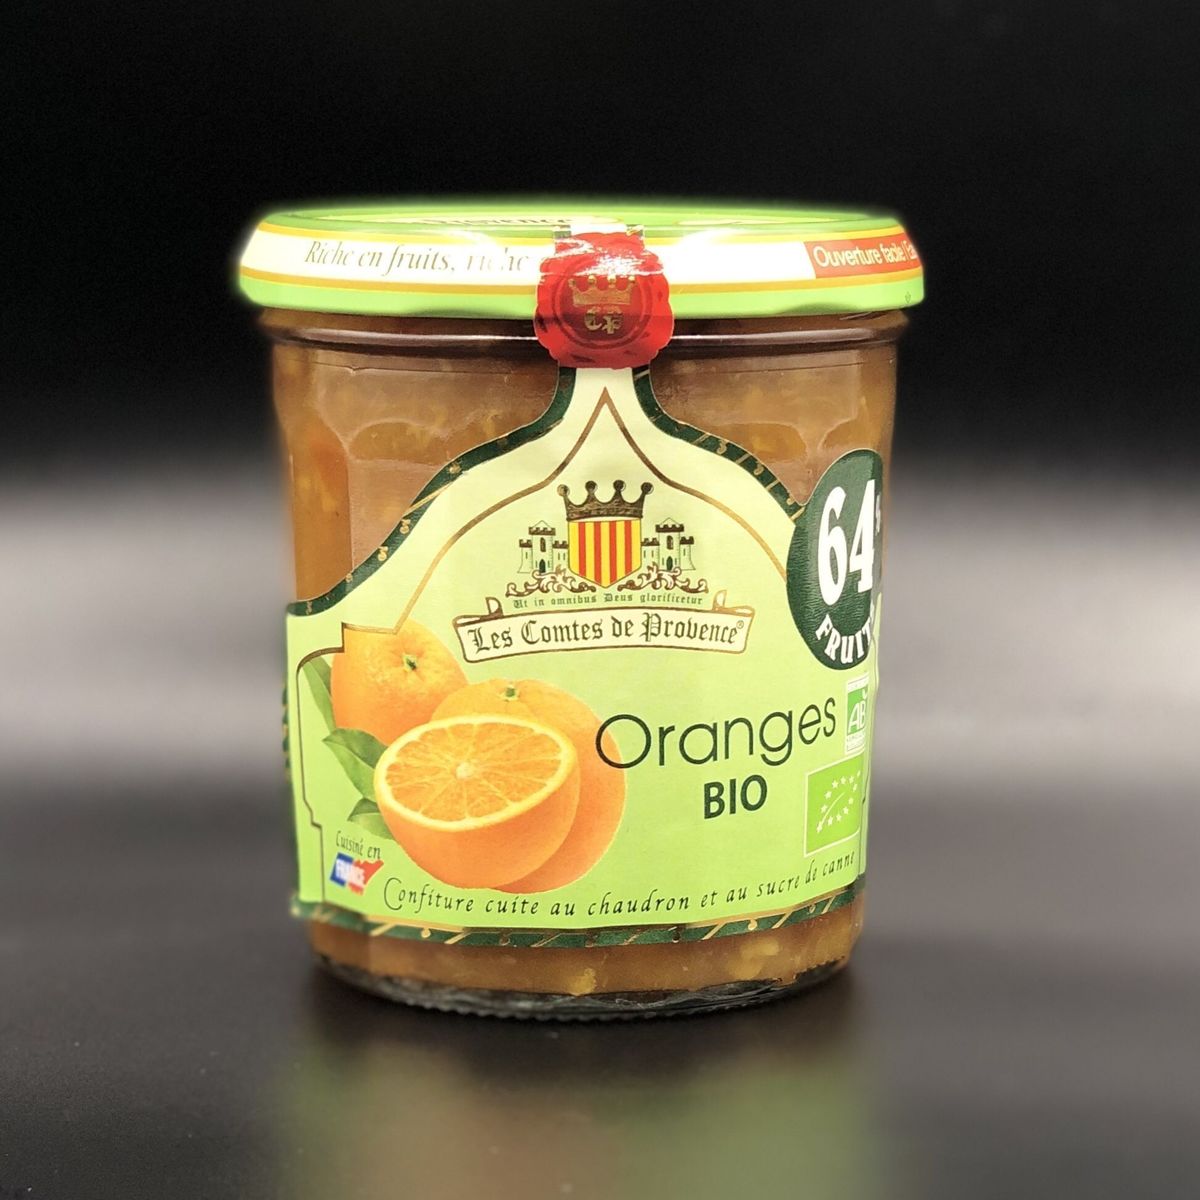 Джем Les Comtes de Provence из апельсина Organic 350гр, 64% фруктов